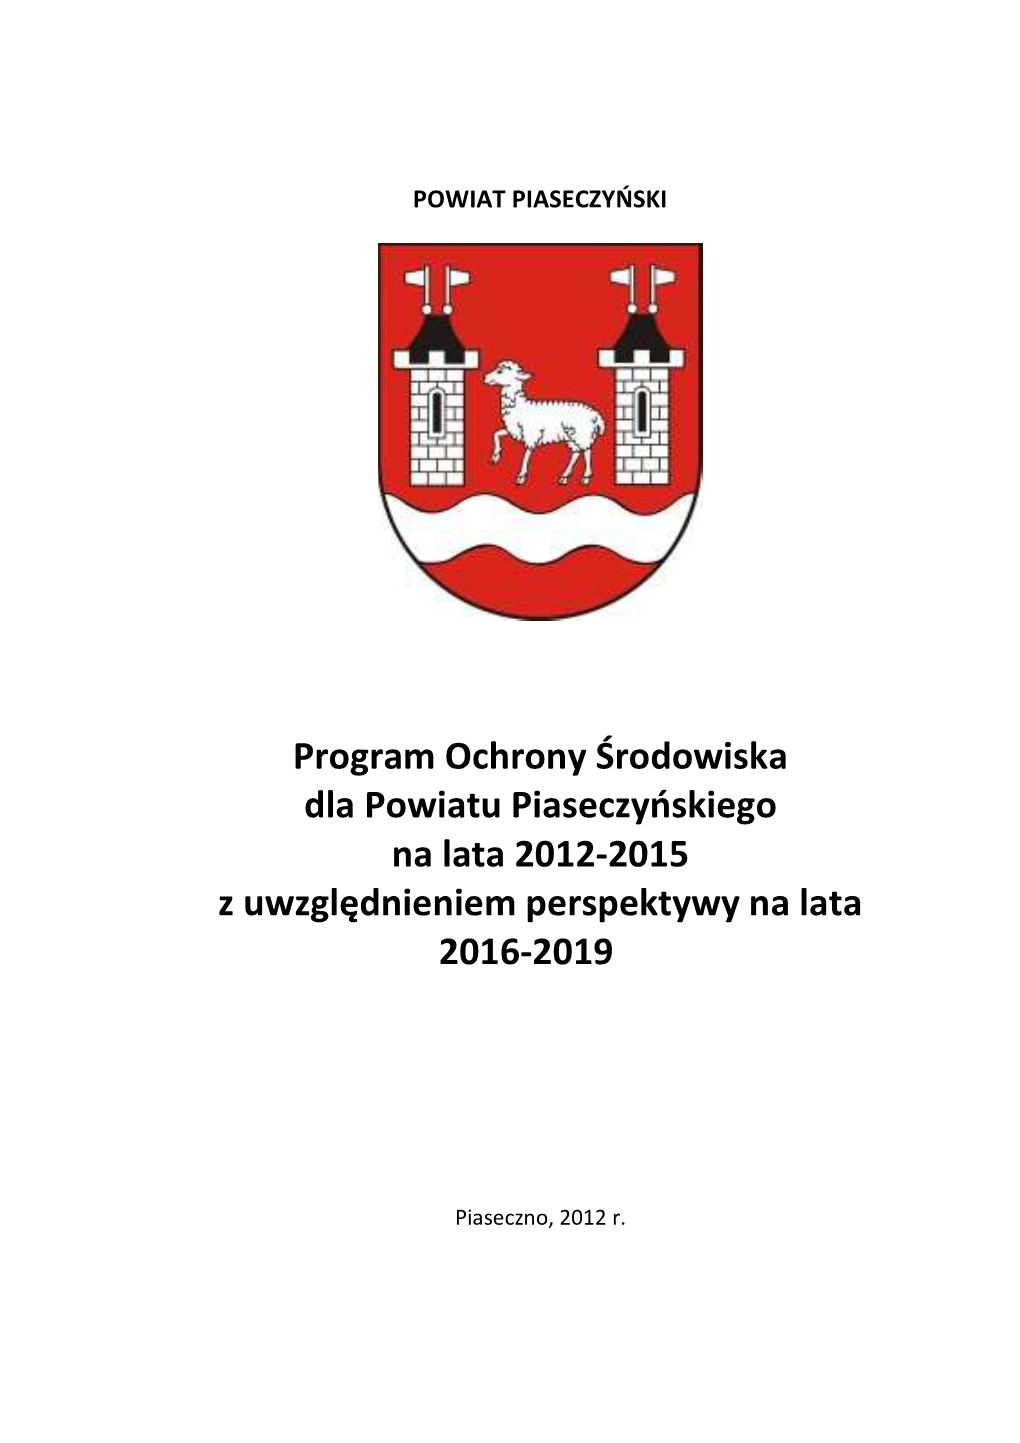 Program Ochrony Środowiska Dla Powiatu Piaseczyńskiego Na Lata 2012-2015 Z Uwzględnieniem Perspektywy Na Lata 2016-2019